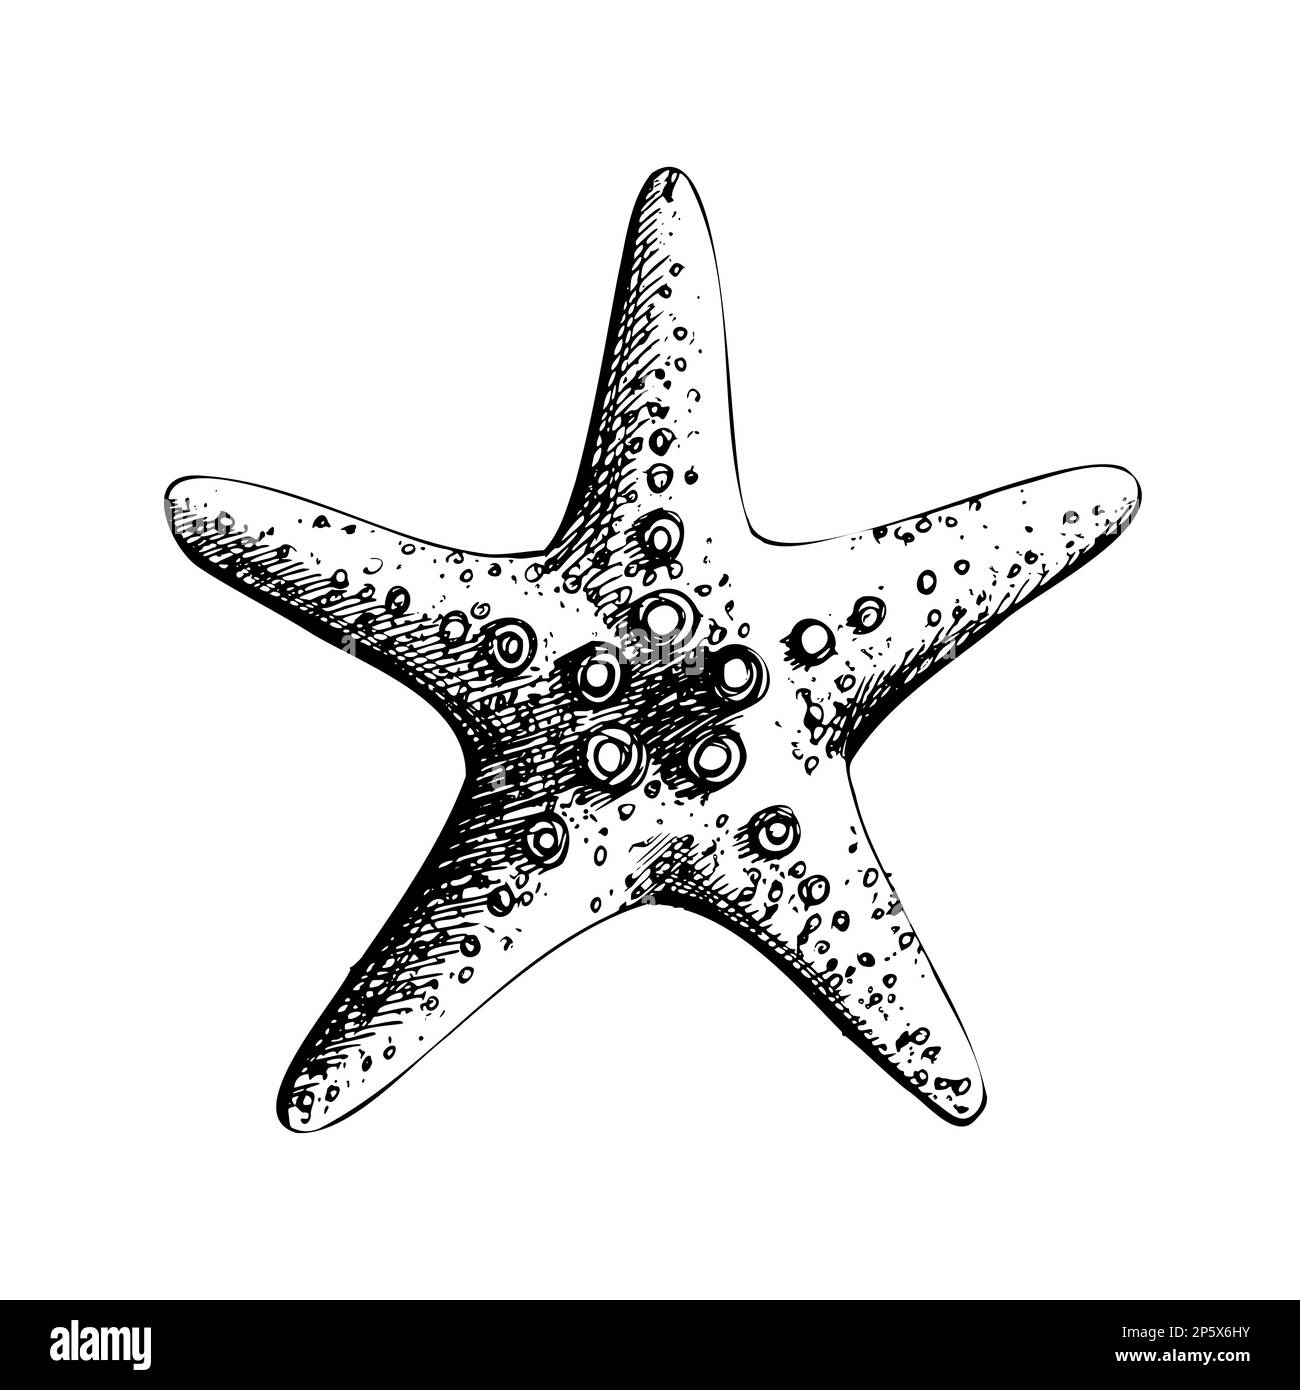 Estrellas de mar. Objeto aislado dibujado a mano en técnica gráfica.  Ilustración vectorial para decoración y diseño de verano, náutica y playa  Imagen Vector de stock - Alamy